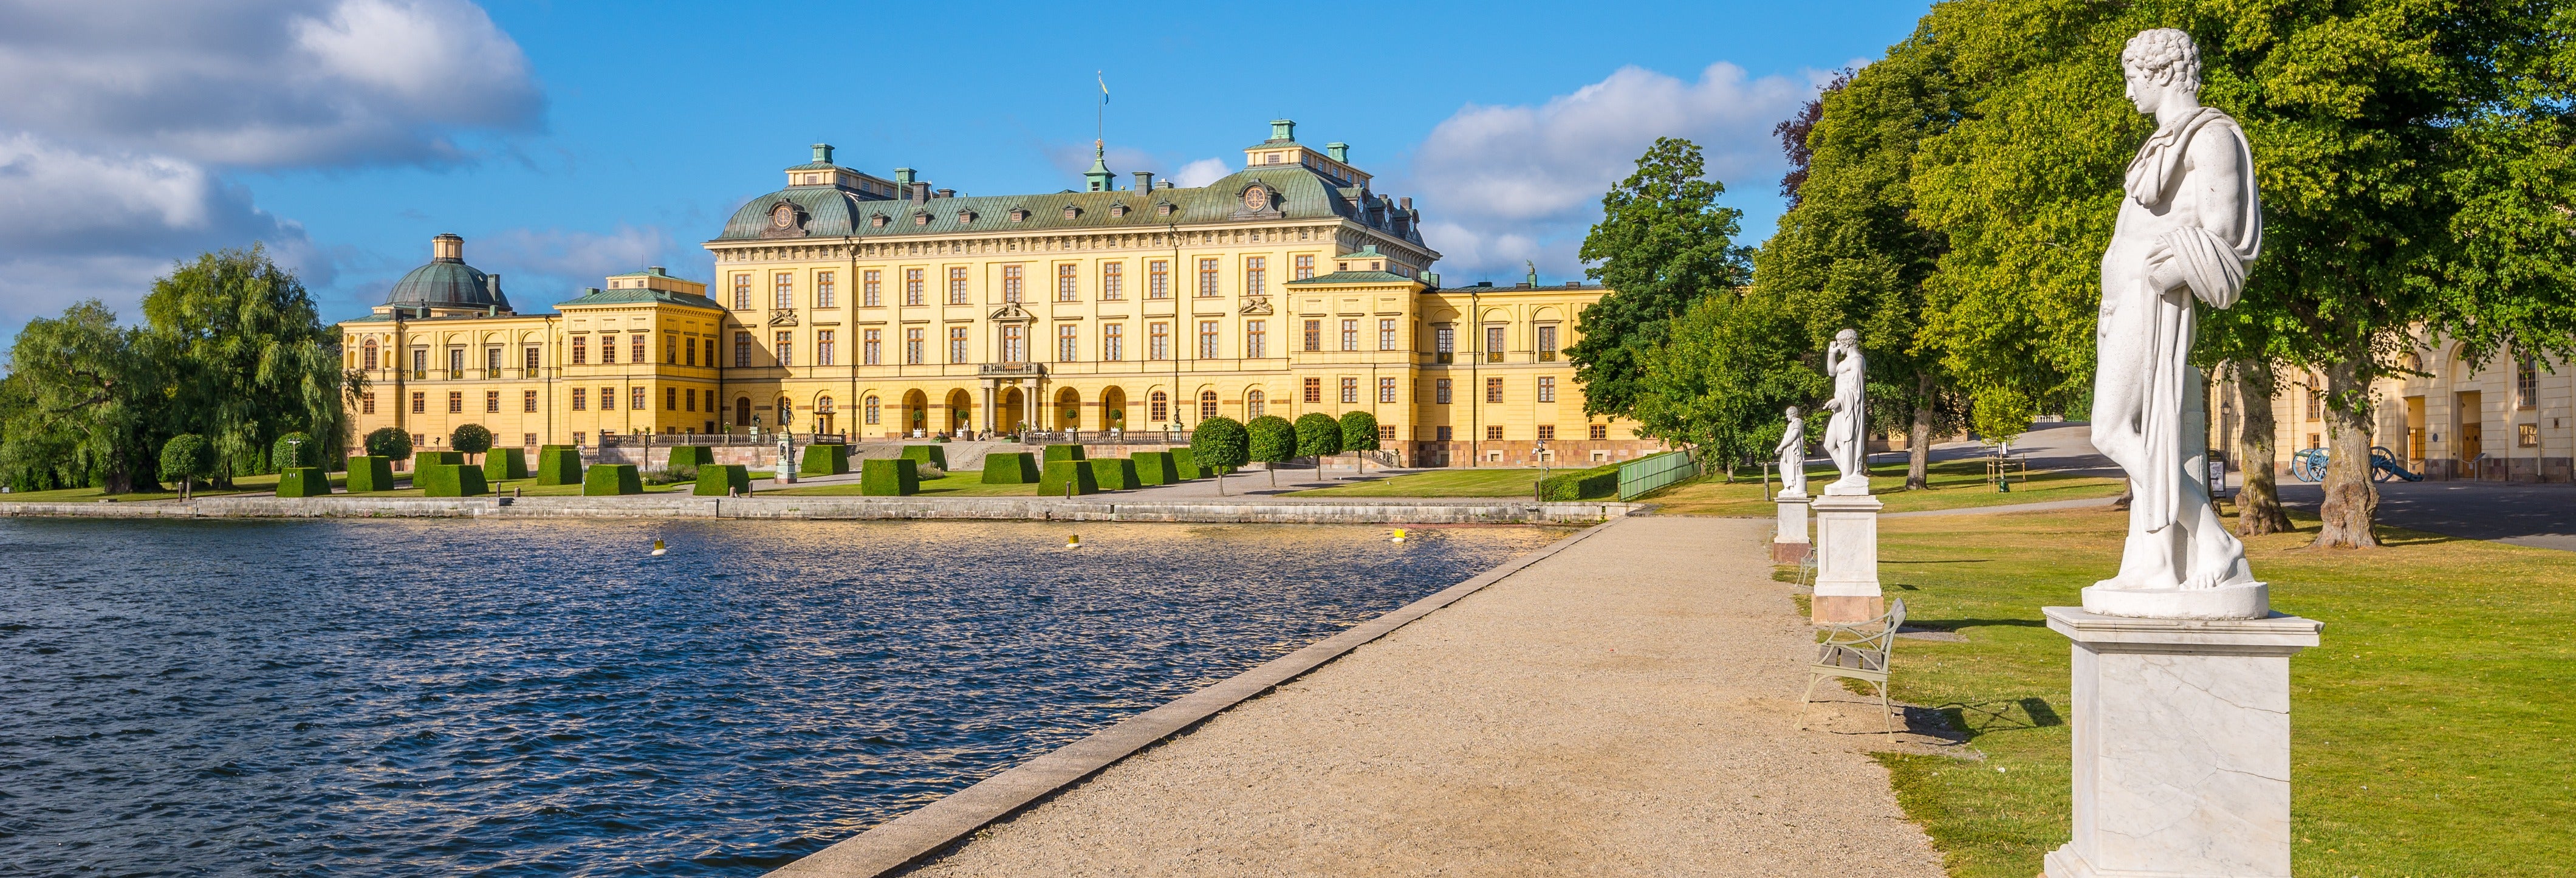 Excursión al palacio de Drottningholm